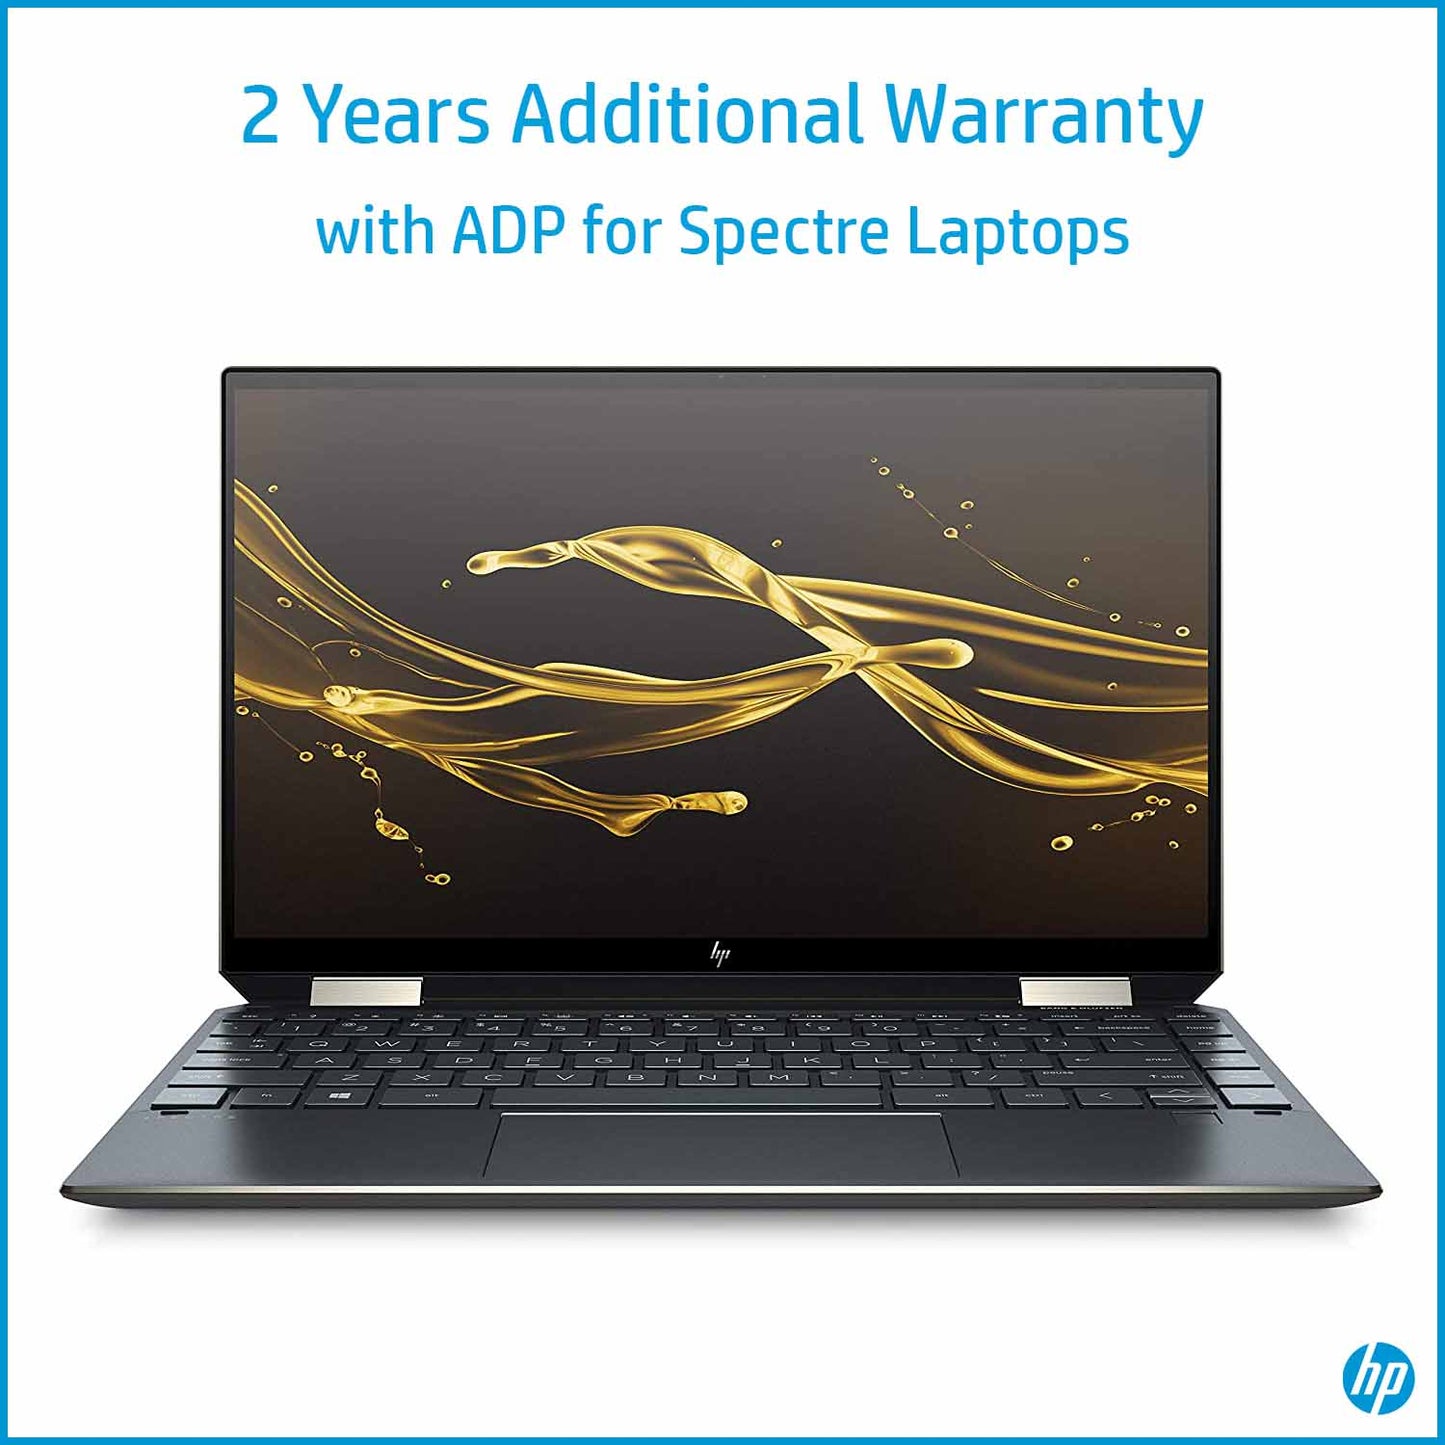 स्पेक्टर लैपटॉप के लिए एडीपी के साथ एचपी केयर पैक 2 साल की अतिरिक्त वारंटी - लैपटॉप नहीं